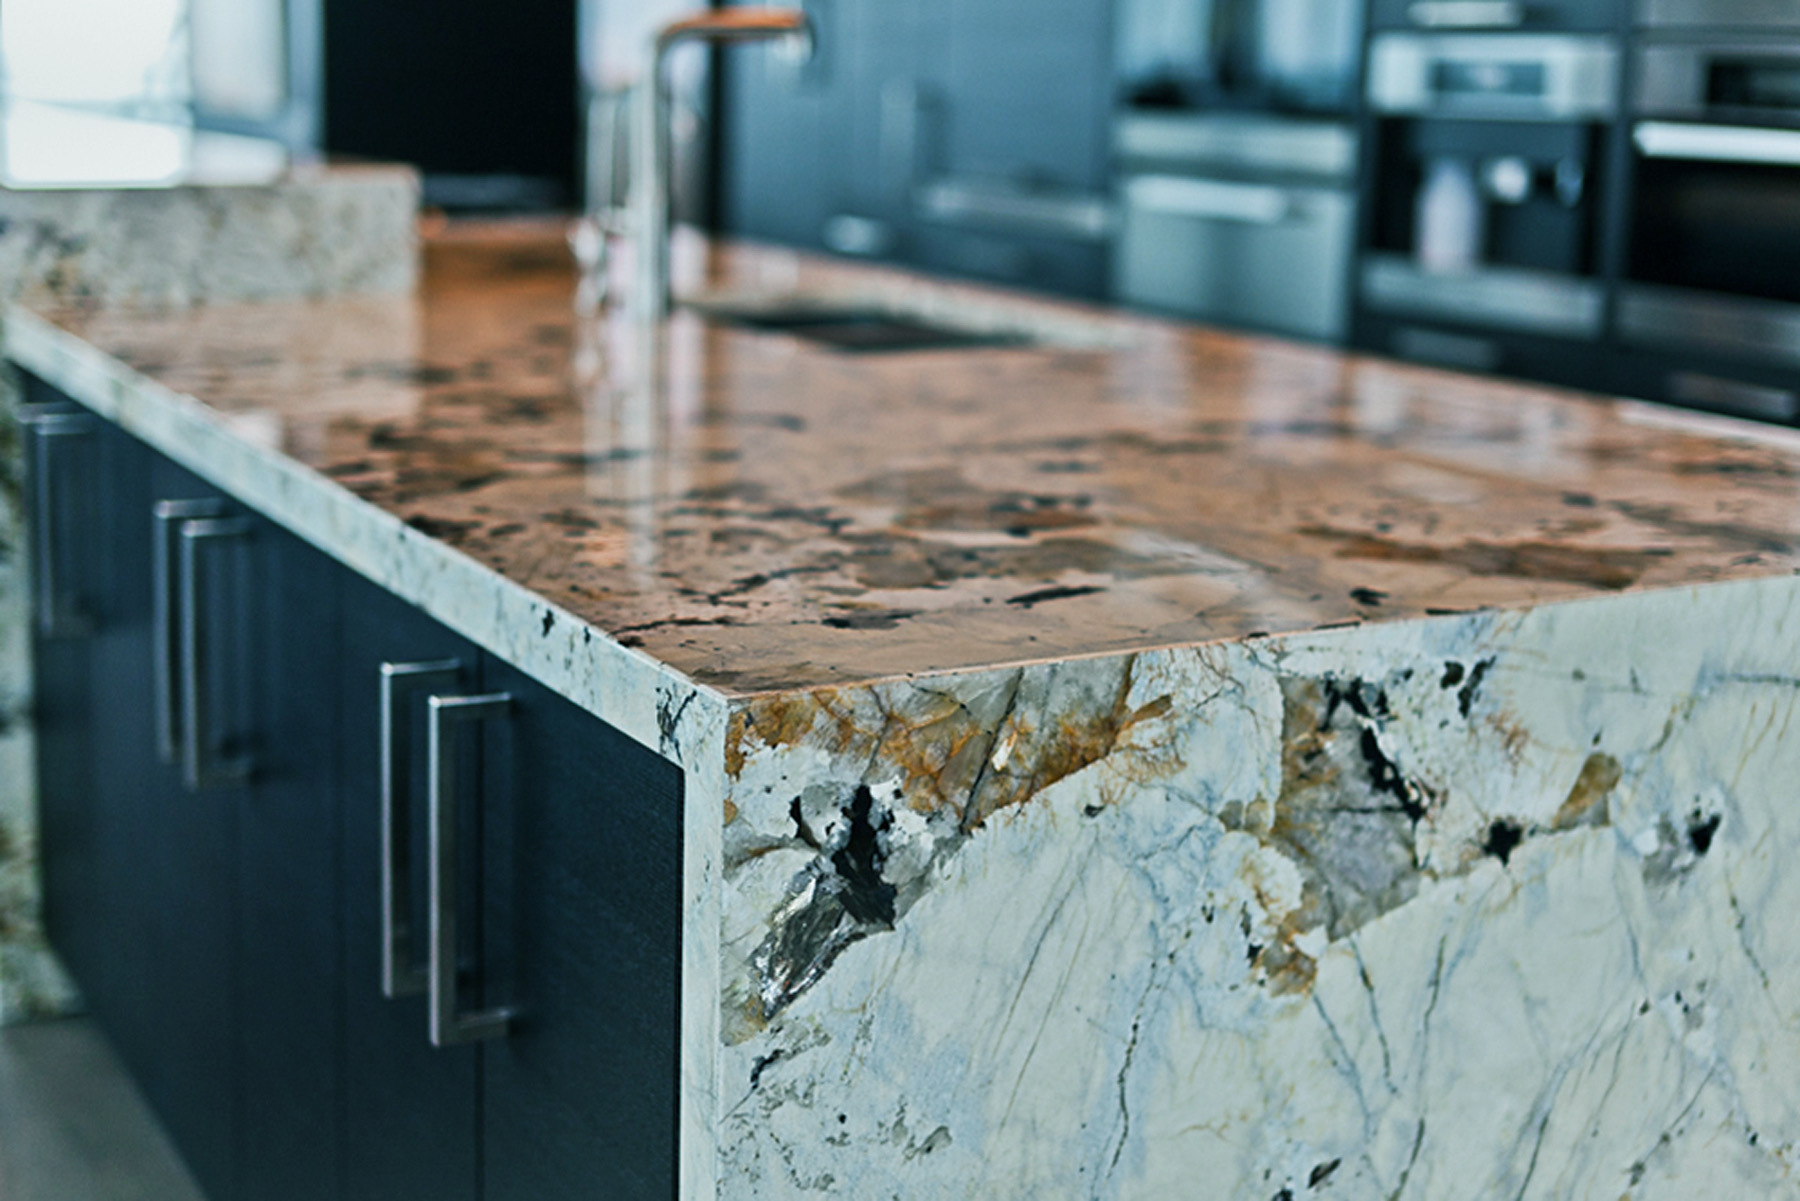 granite kitchen countertop in miami. Gray and brown kitchen island countertop.